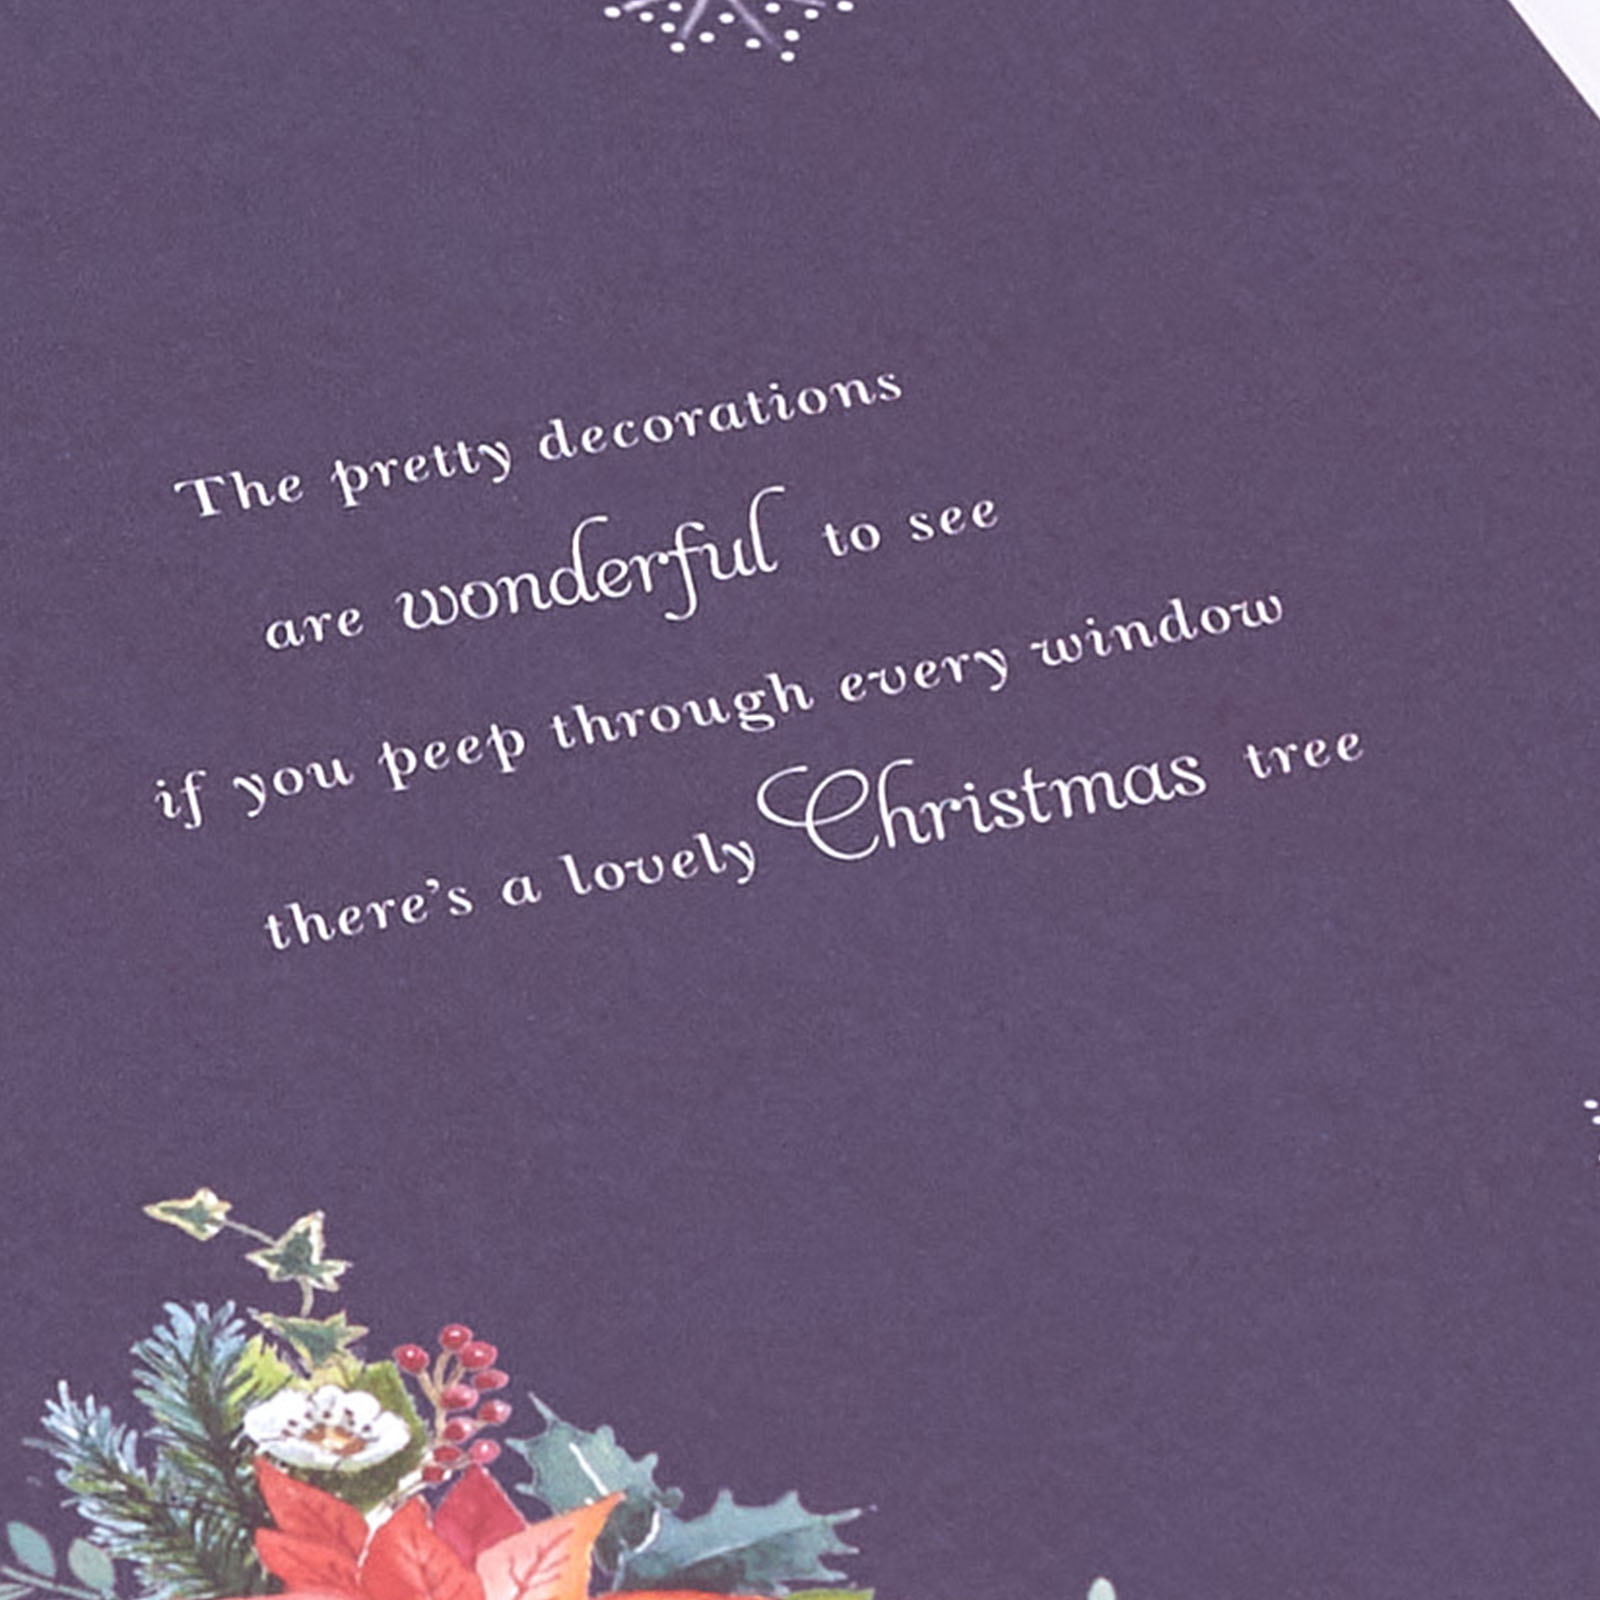 Christmas Card - For Both Of You, Christmas Hanging Basket